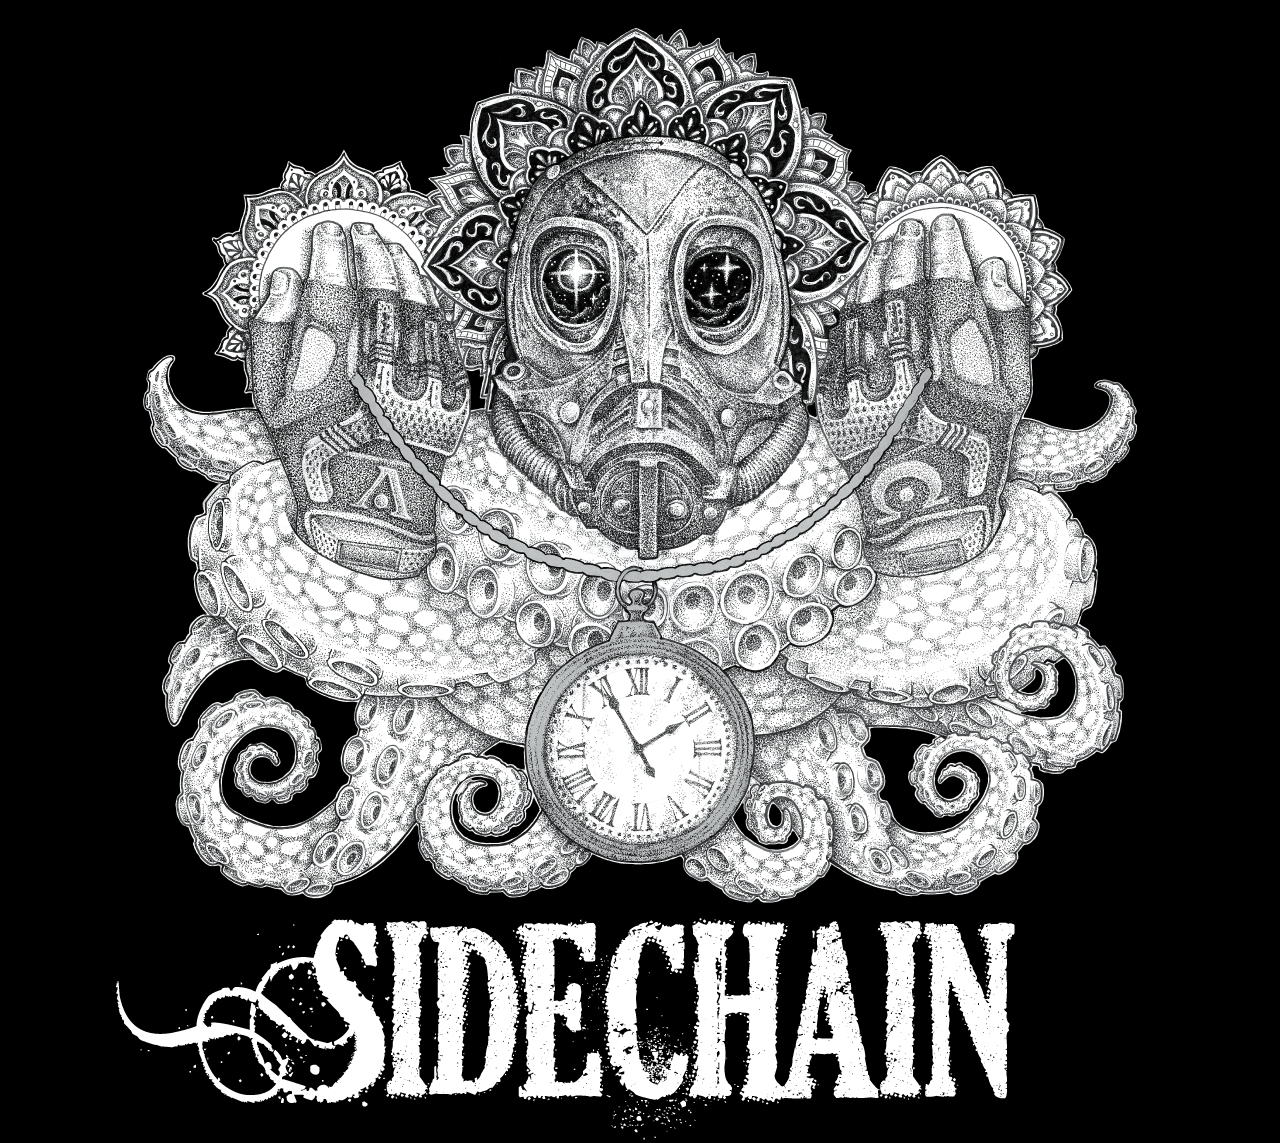 Il disco d'esordio dei Sidechain è ora disponibile all’acquisto